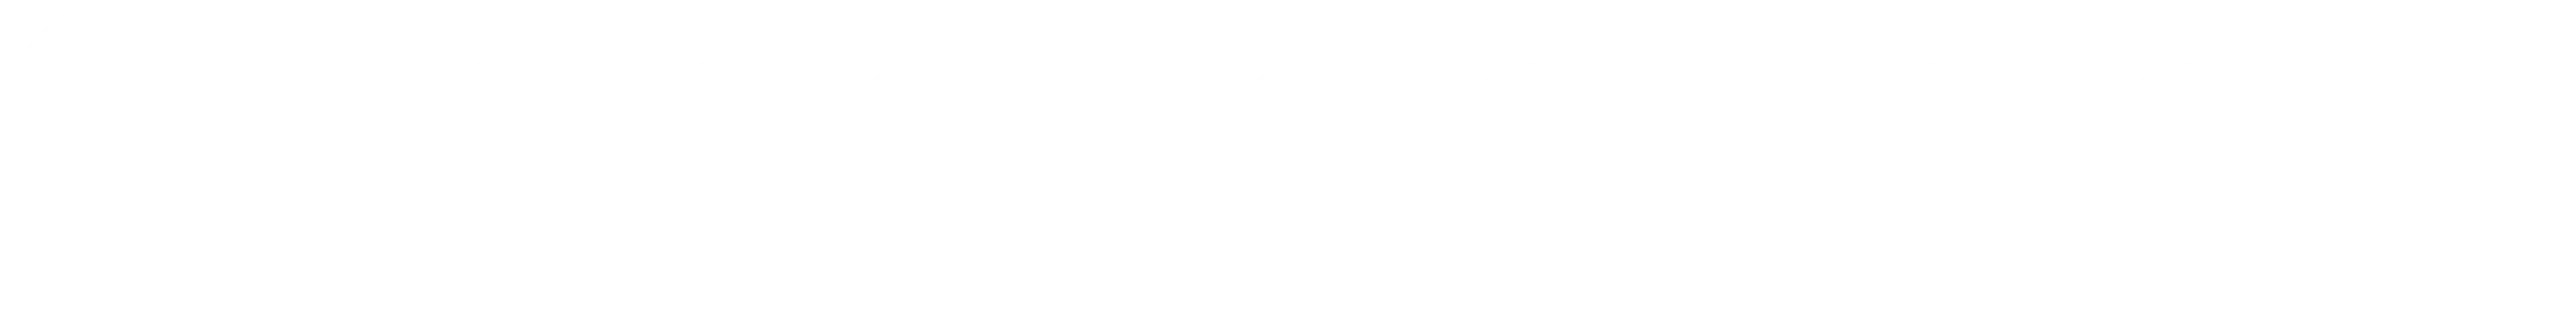 logo gecko design blanc